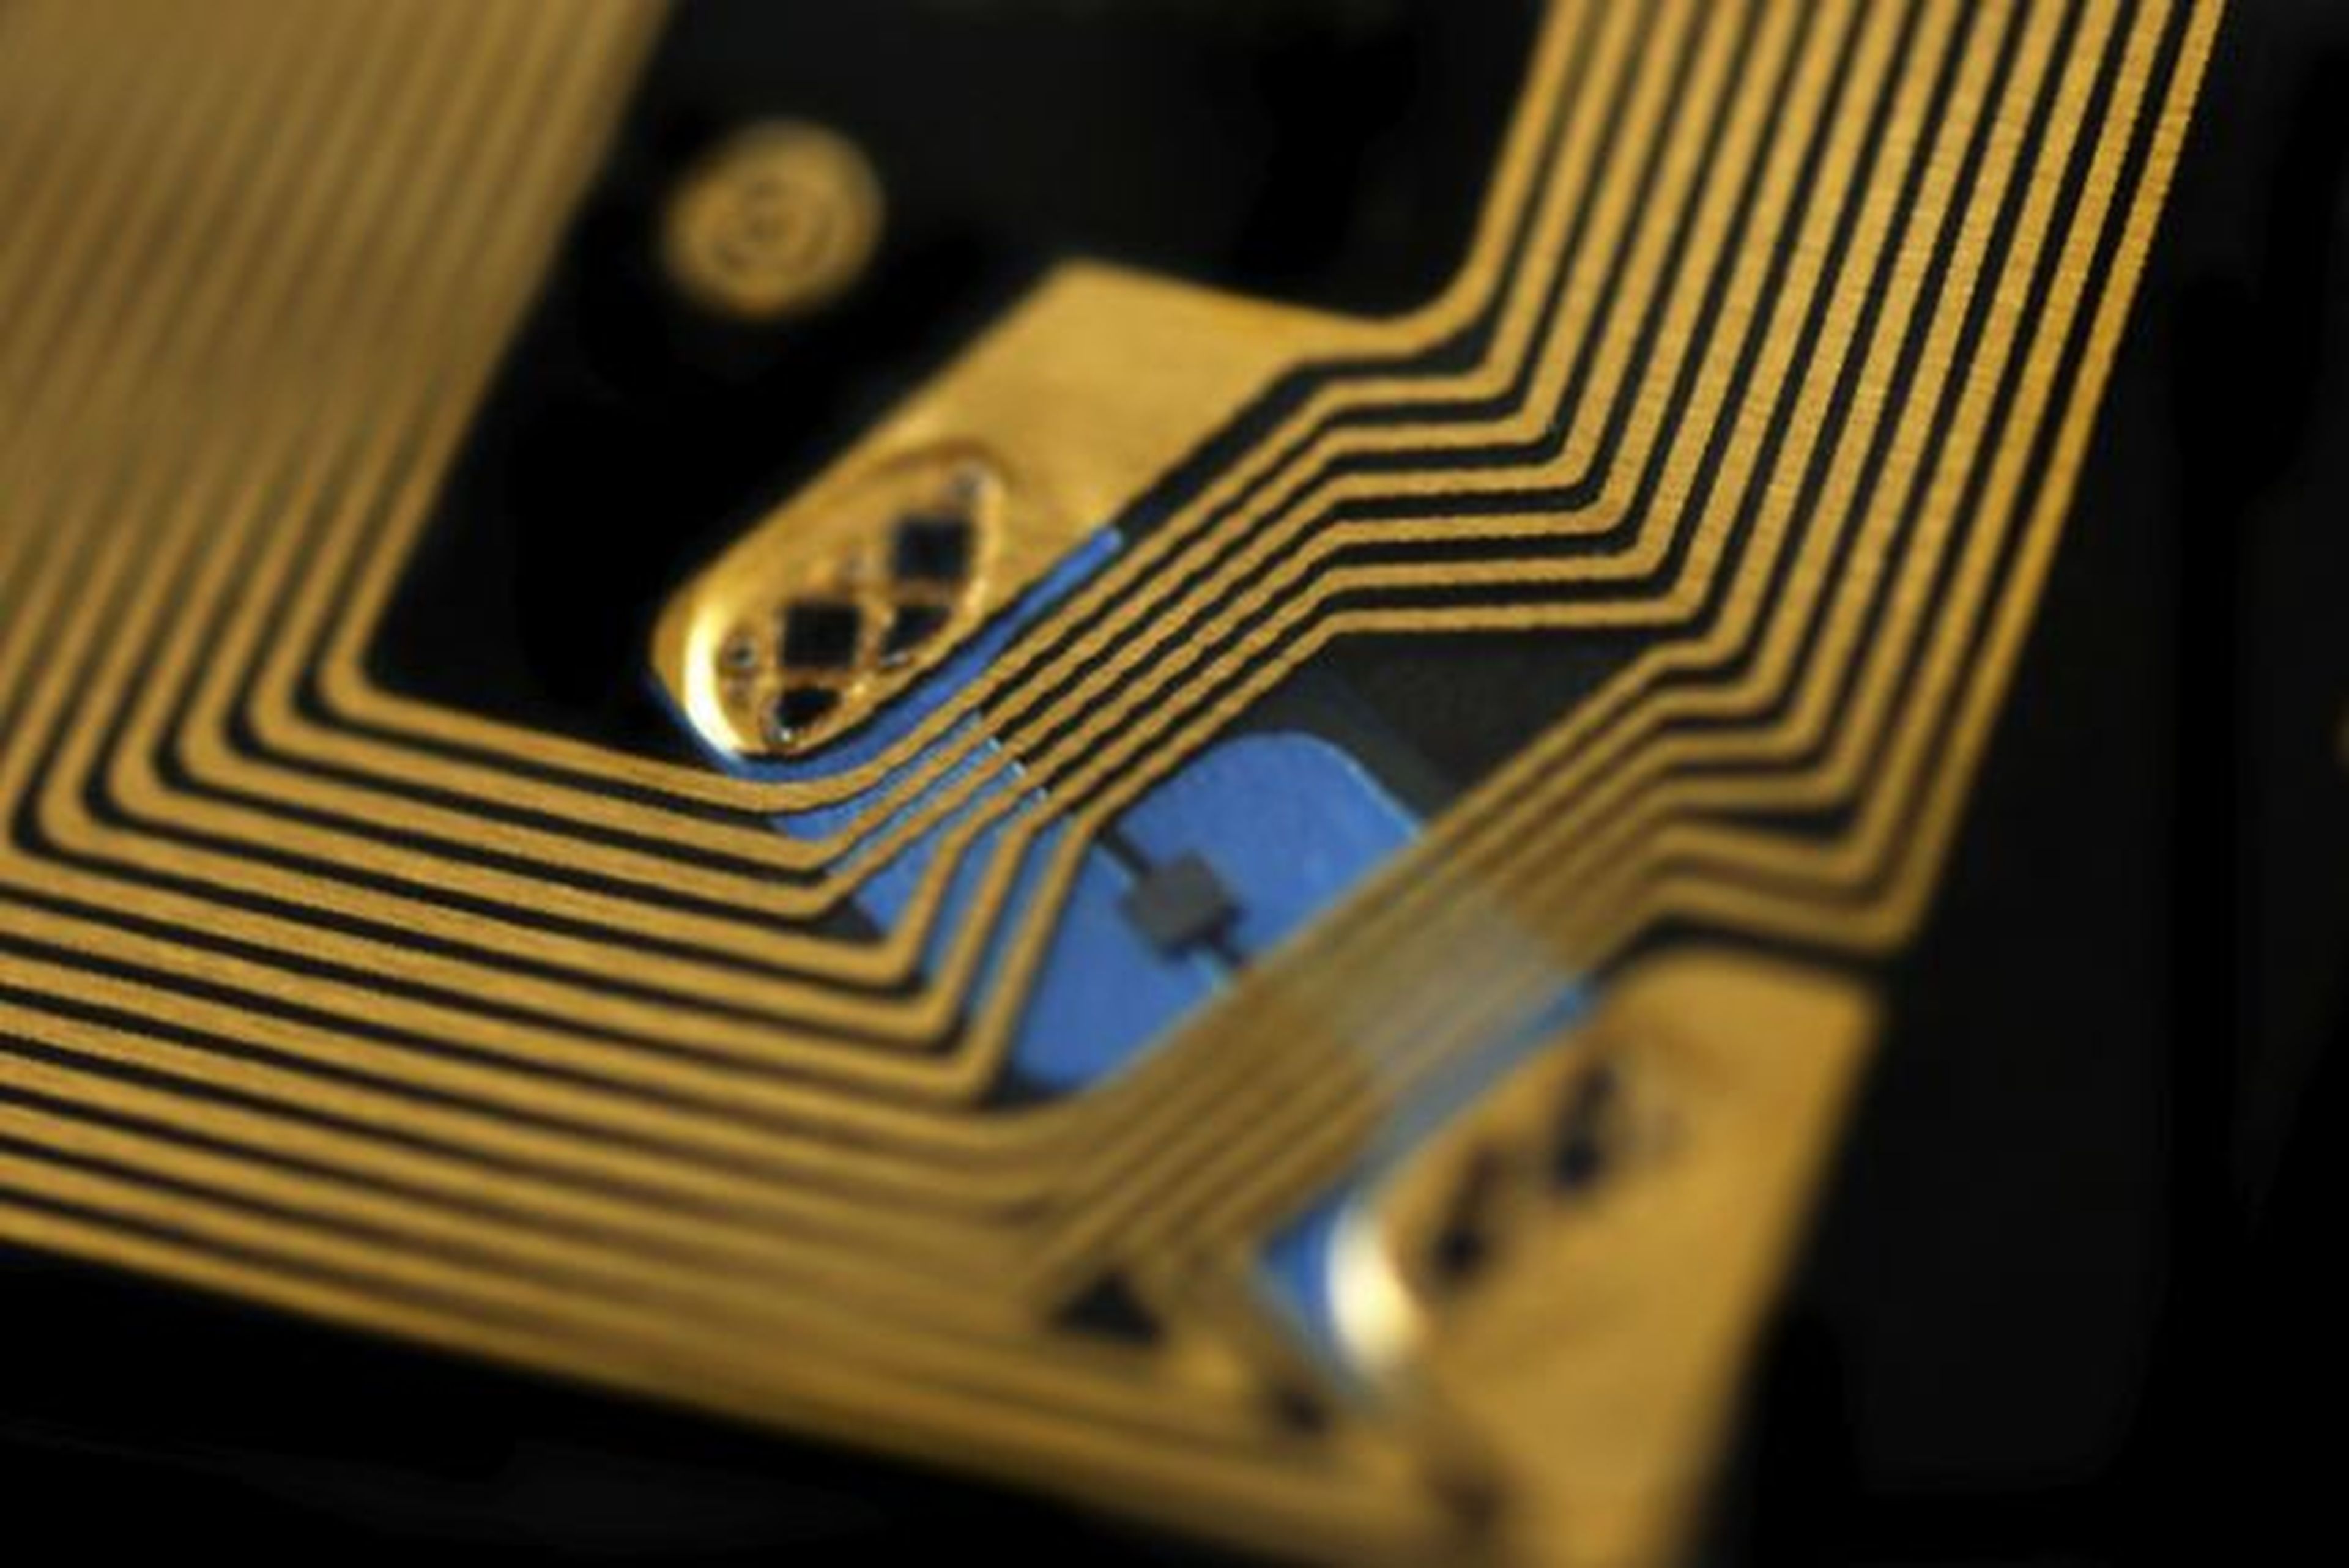 Nuevo chip RFID más seguro